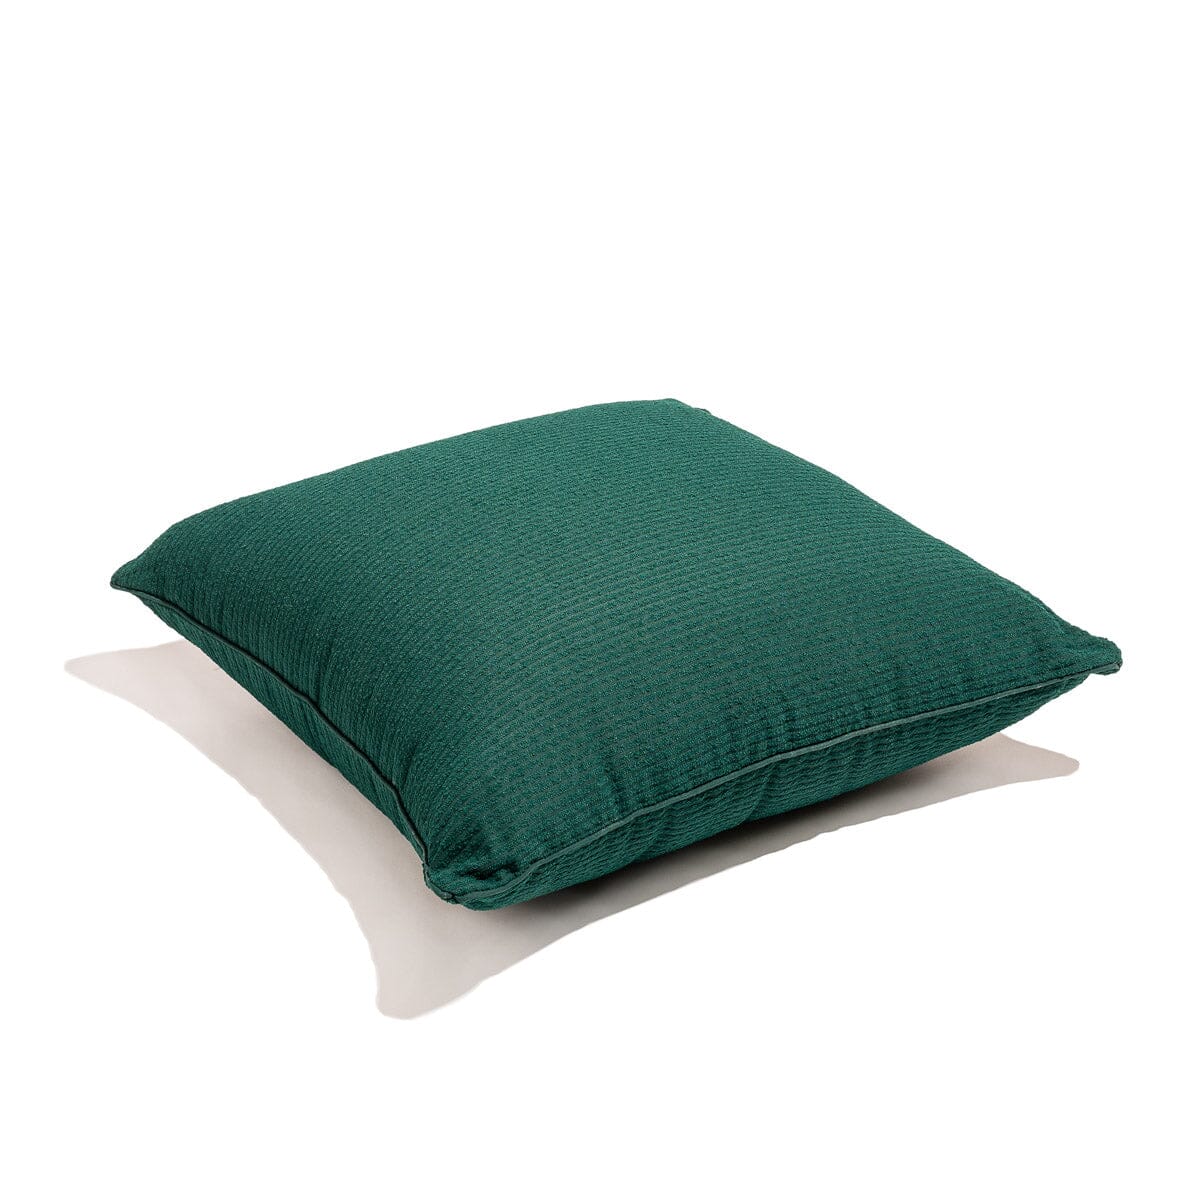 The Euro Throw Pillow - Corduroy Green Euro Throw Pillow Business & Pleasure Co 